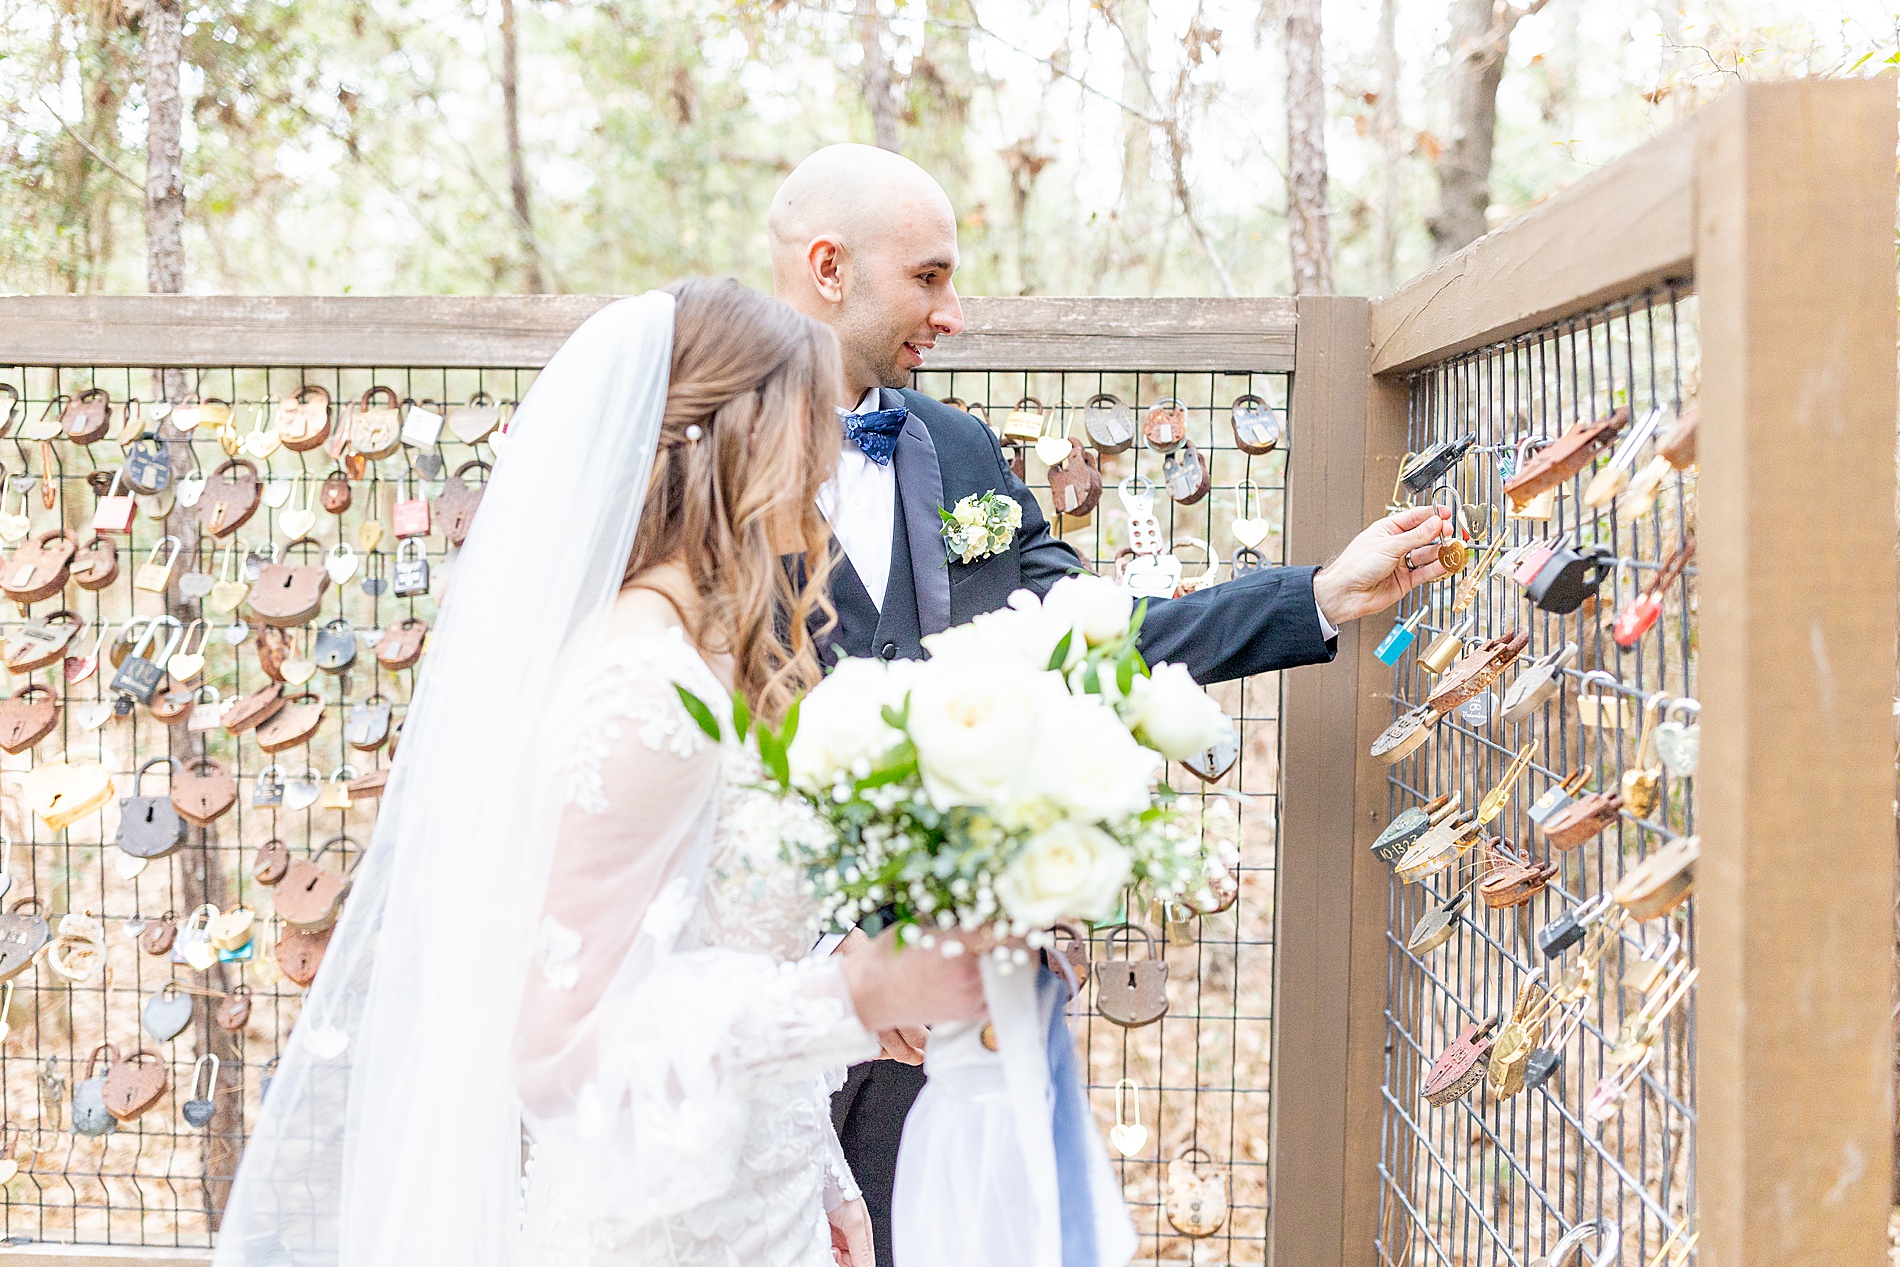 newlyweds put lock on fence